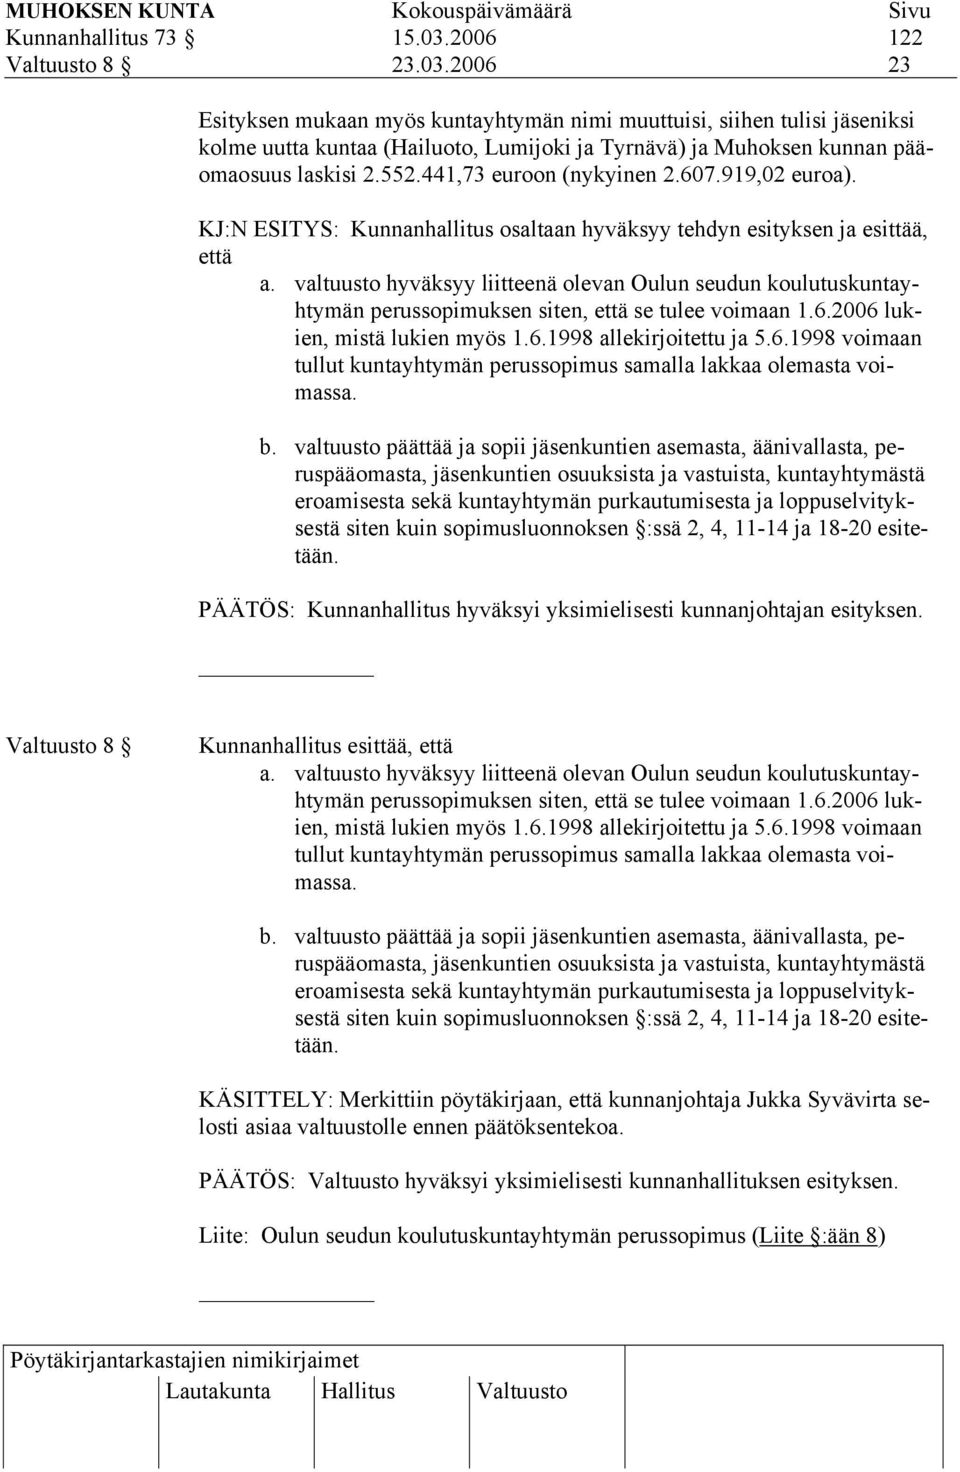 valtuusto hyväksyy liitteenä olevan Oulun seudun koulutuskuntayhtymän perussopimuksen siten, että se tulee voimaan 1.6.2006 lukien, mistä lukien myös 1.6.1998 allekirjoitettu ja 5.6.1998 voimaan tullut kuntayhtymän perussopimus samalla lakkaa olemasta voimassa.